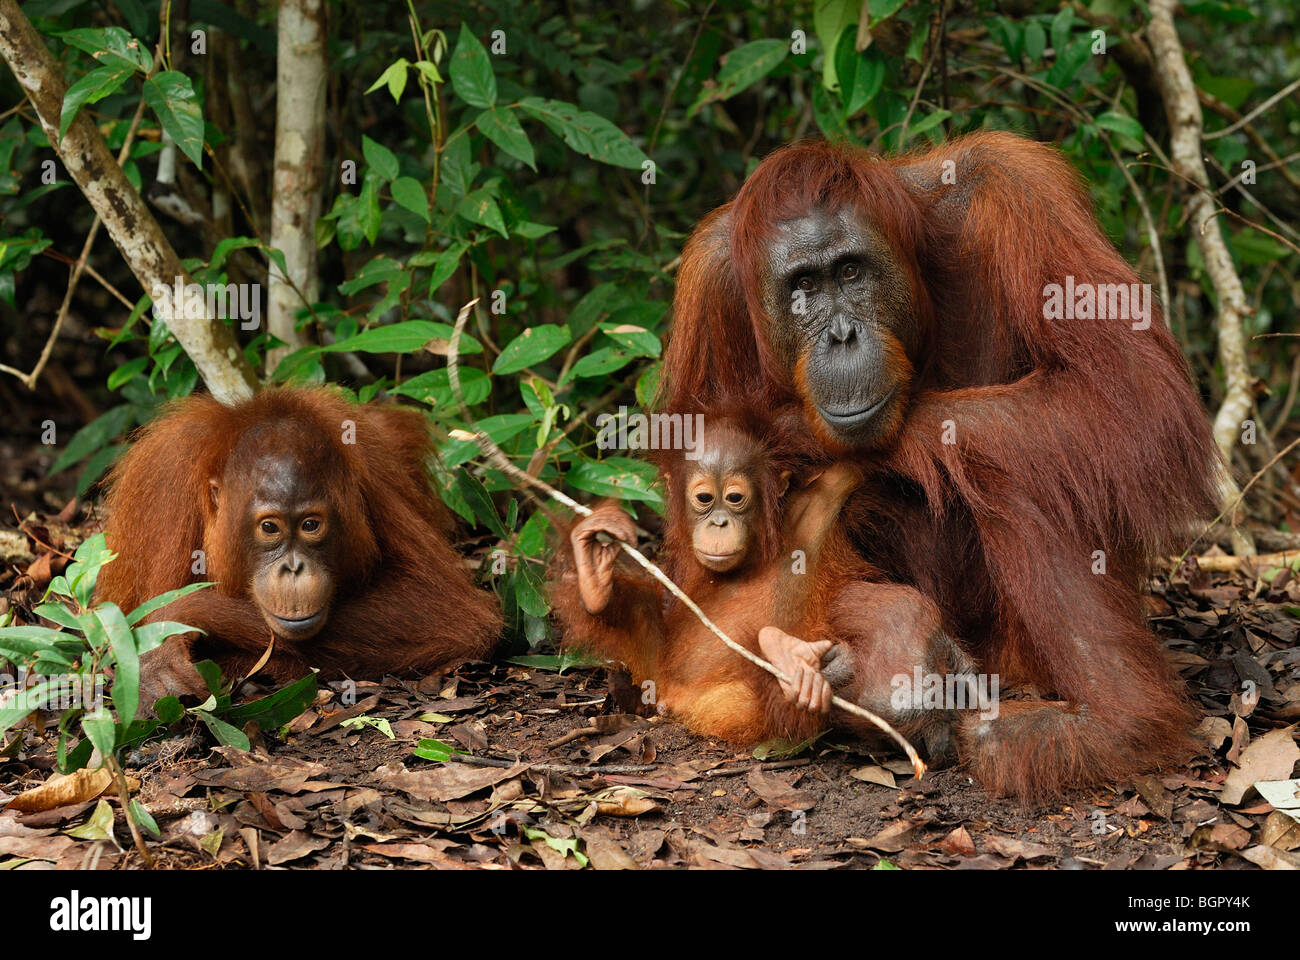 L'orang-outan de Bornéo (Pongo pygmaeus), femme avec un bébé, qui fuient le camp, parc national de Tanjung Puting, Kalimantan, Bornéo, Indonésie Banque D'Images